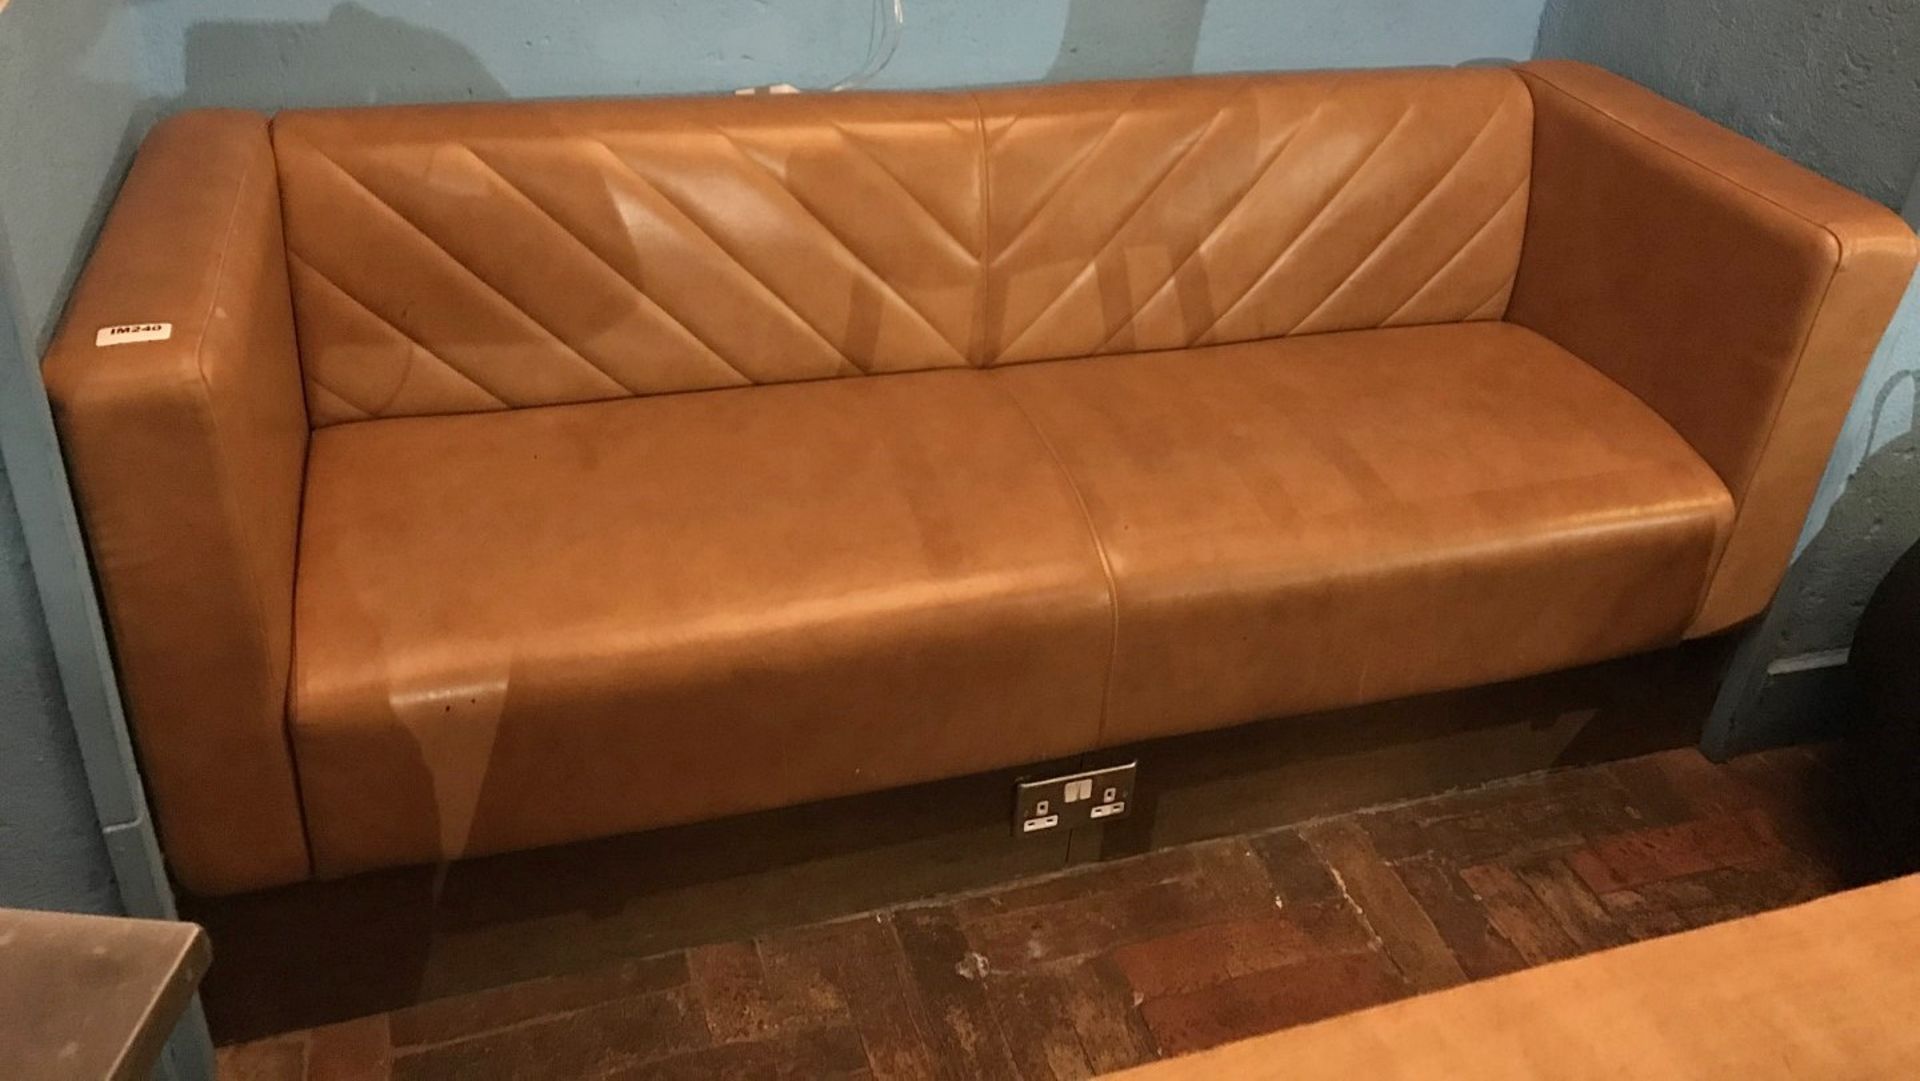 1 x Tan Leather Sofa - Size H45/77 x W182 x D61 cms - CL554 - Ref IM240 - Location: London E1